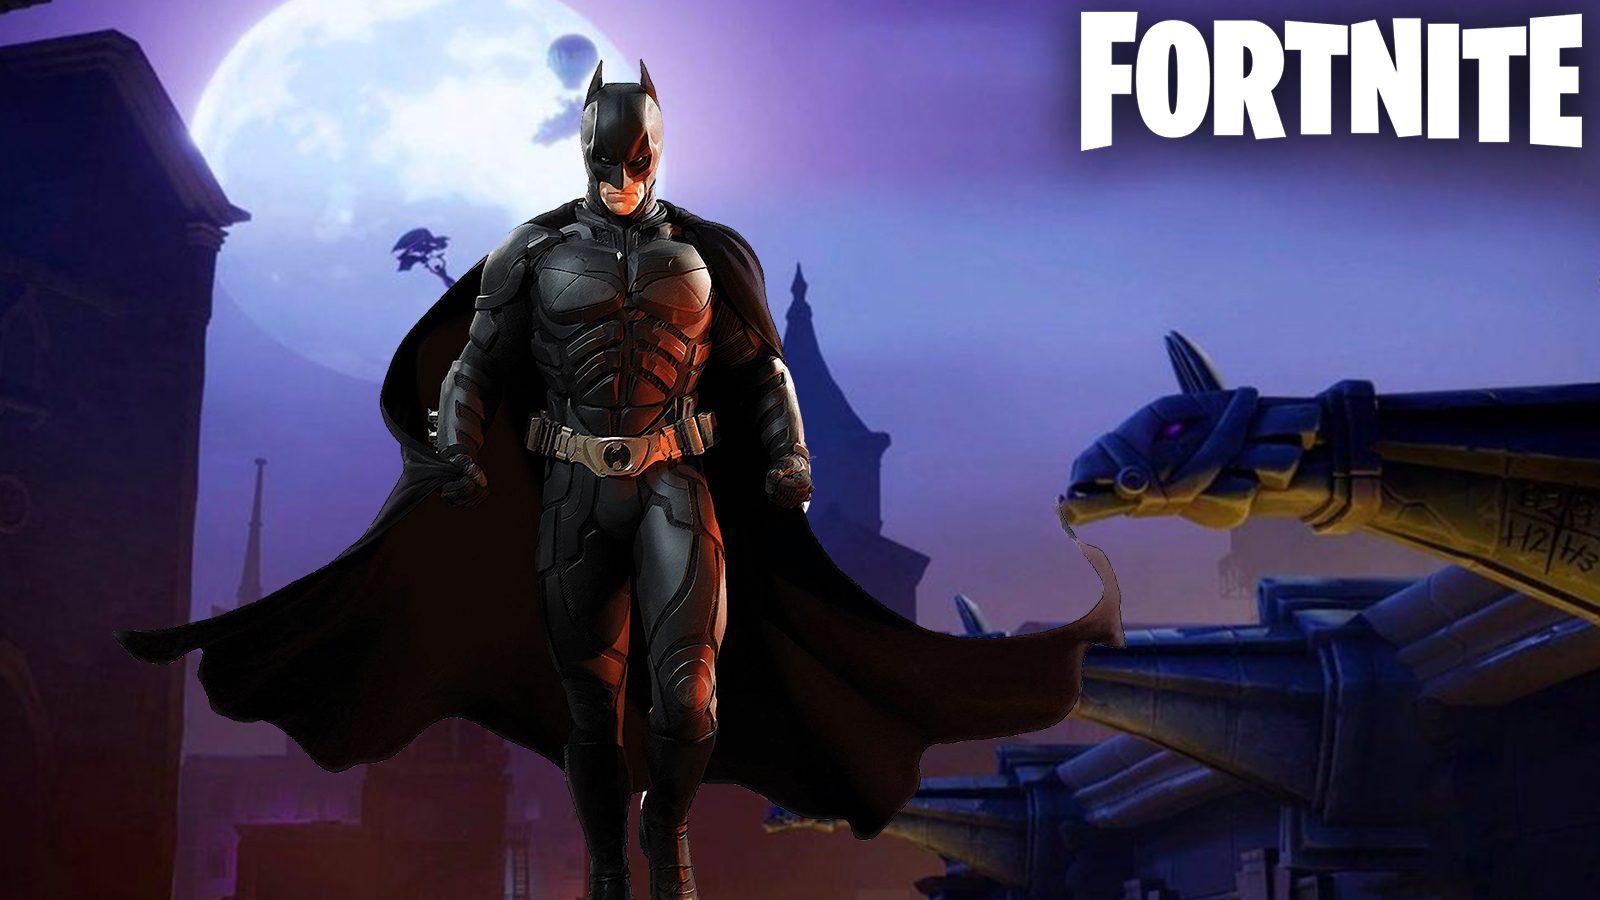 Fortnite x Batman event leaked: Gotham, Bat weapons, more